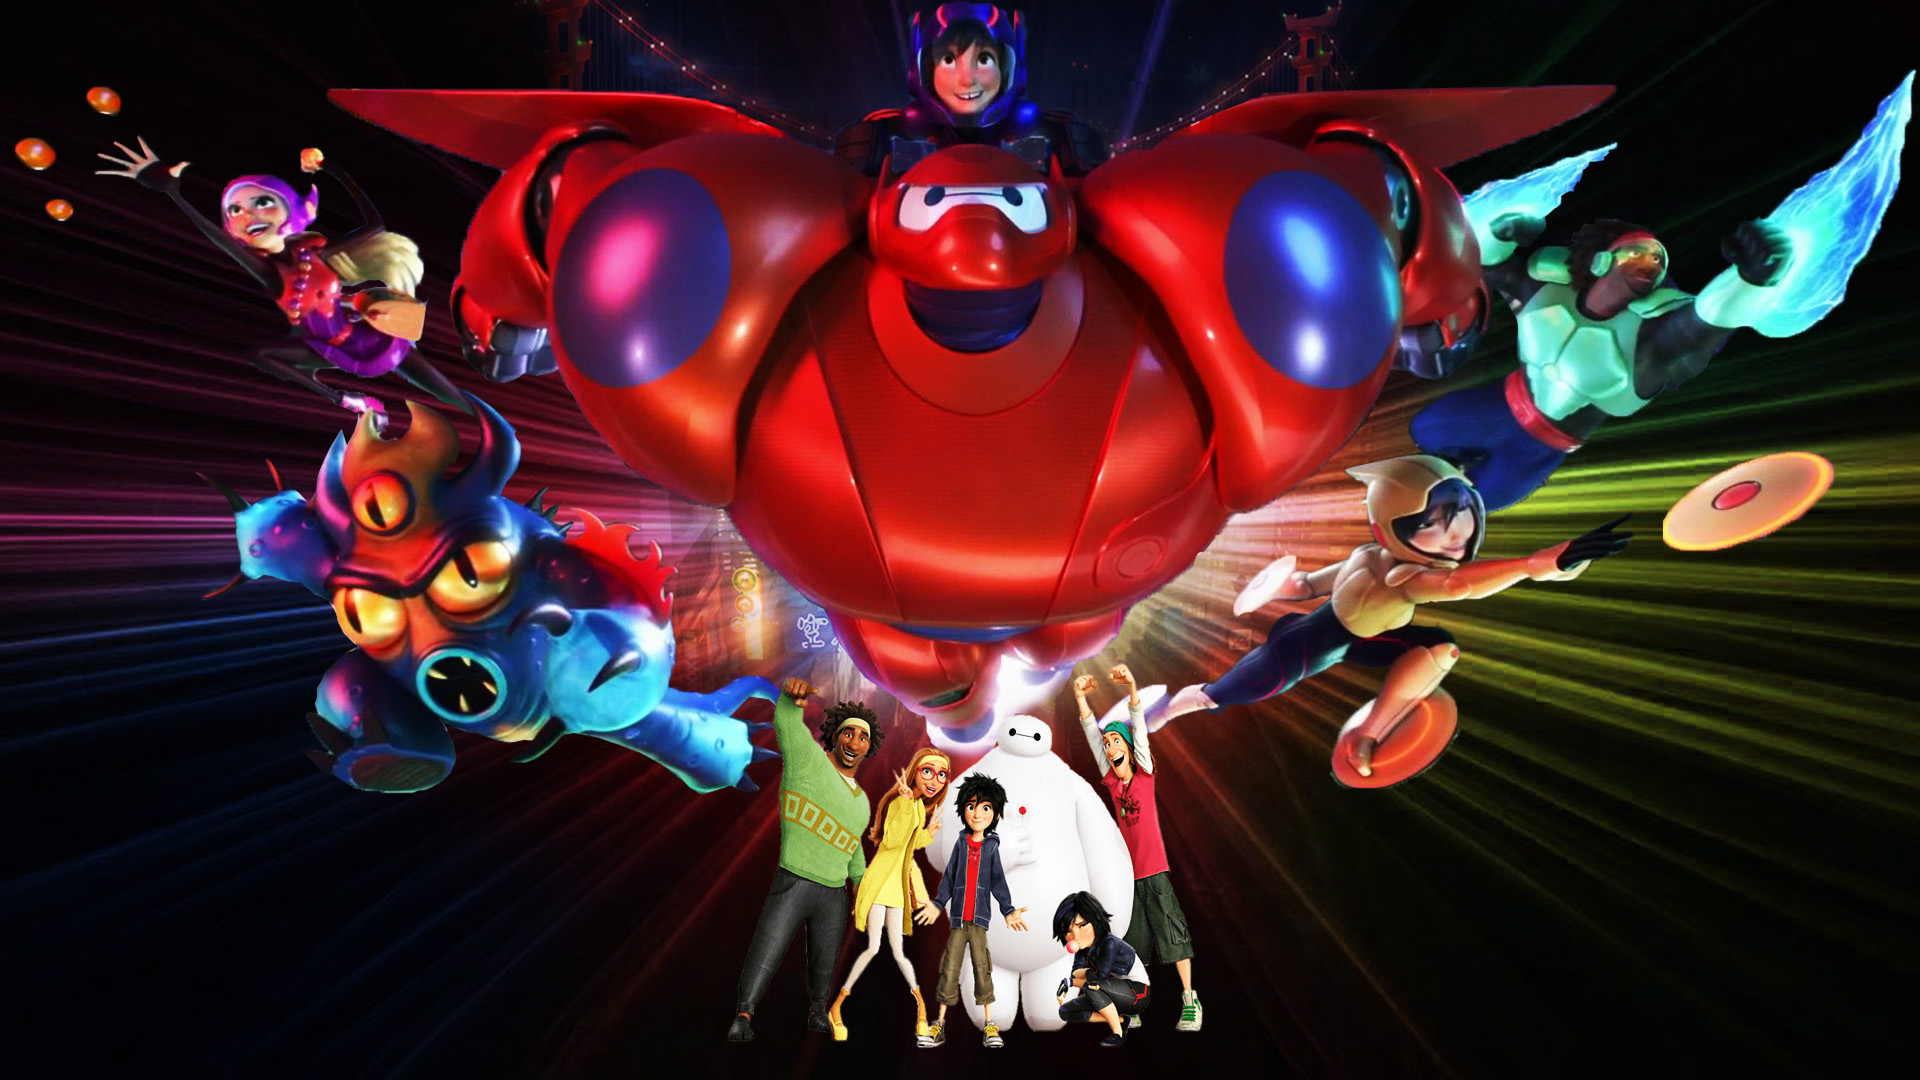 Big Hero 6: Big Hero 6 là một bộ phim hoạt hình tuyệt vời của Disney, là câu chuyện của một nhóm siêu anh hùng tiên tiến, bao gồm cả Baymax - một robot đặc biệt. Cùng xem hình ảnh liên quan để khám phá cốt truyện gây cấn và những tình tiết oái oăm, hài hước nhưng cũng đầy cảm xúc.